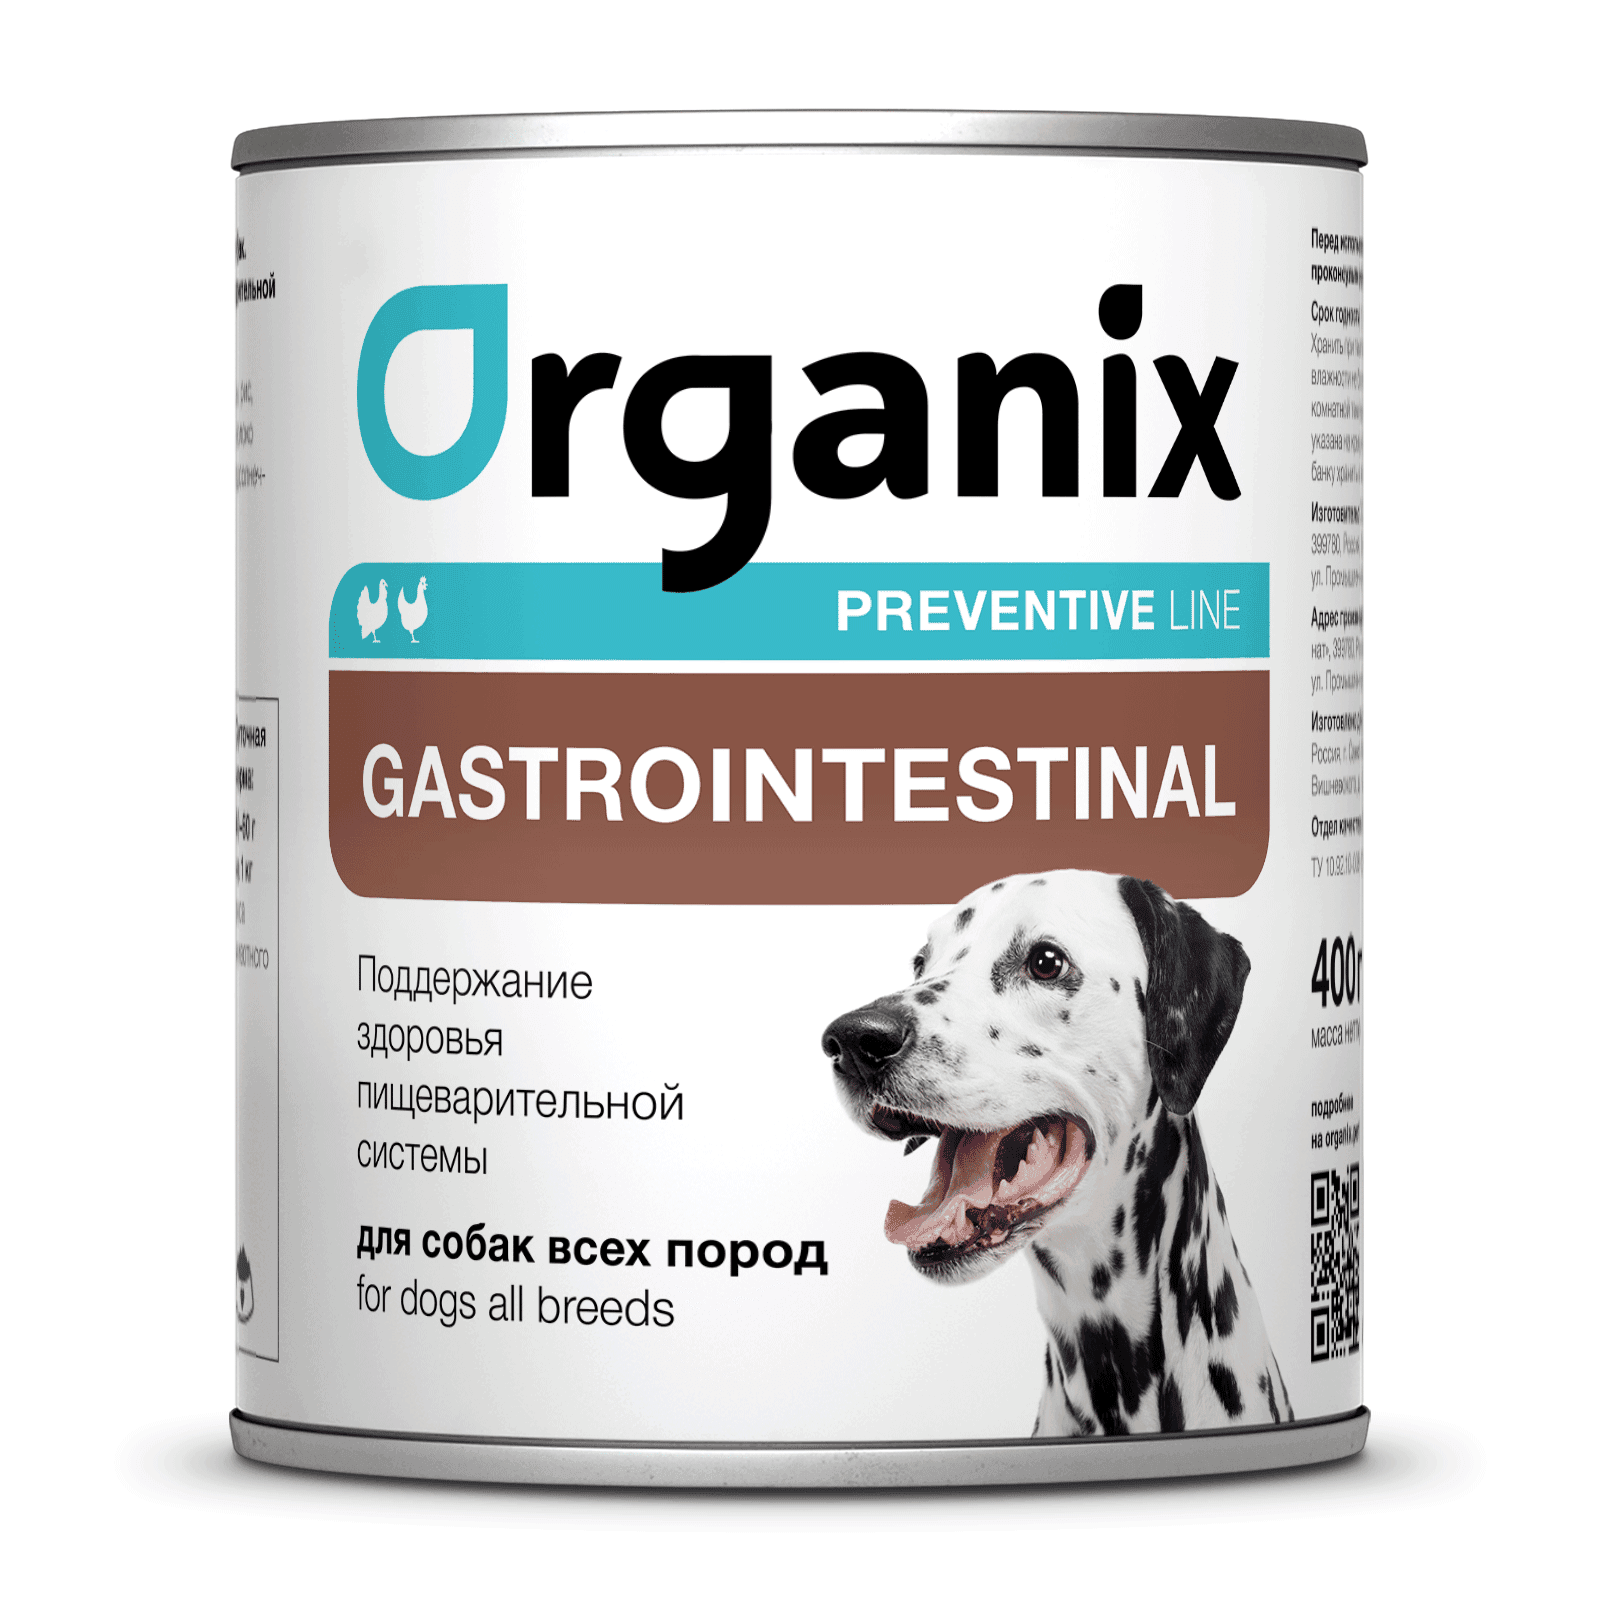 Organix консервы (профилактика) | Gastrointestinal  Консервы для собак. Поддержание здоровья пищеварительной системы. 400 г